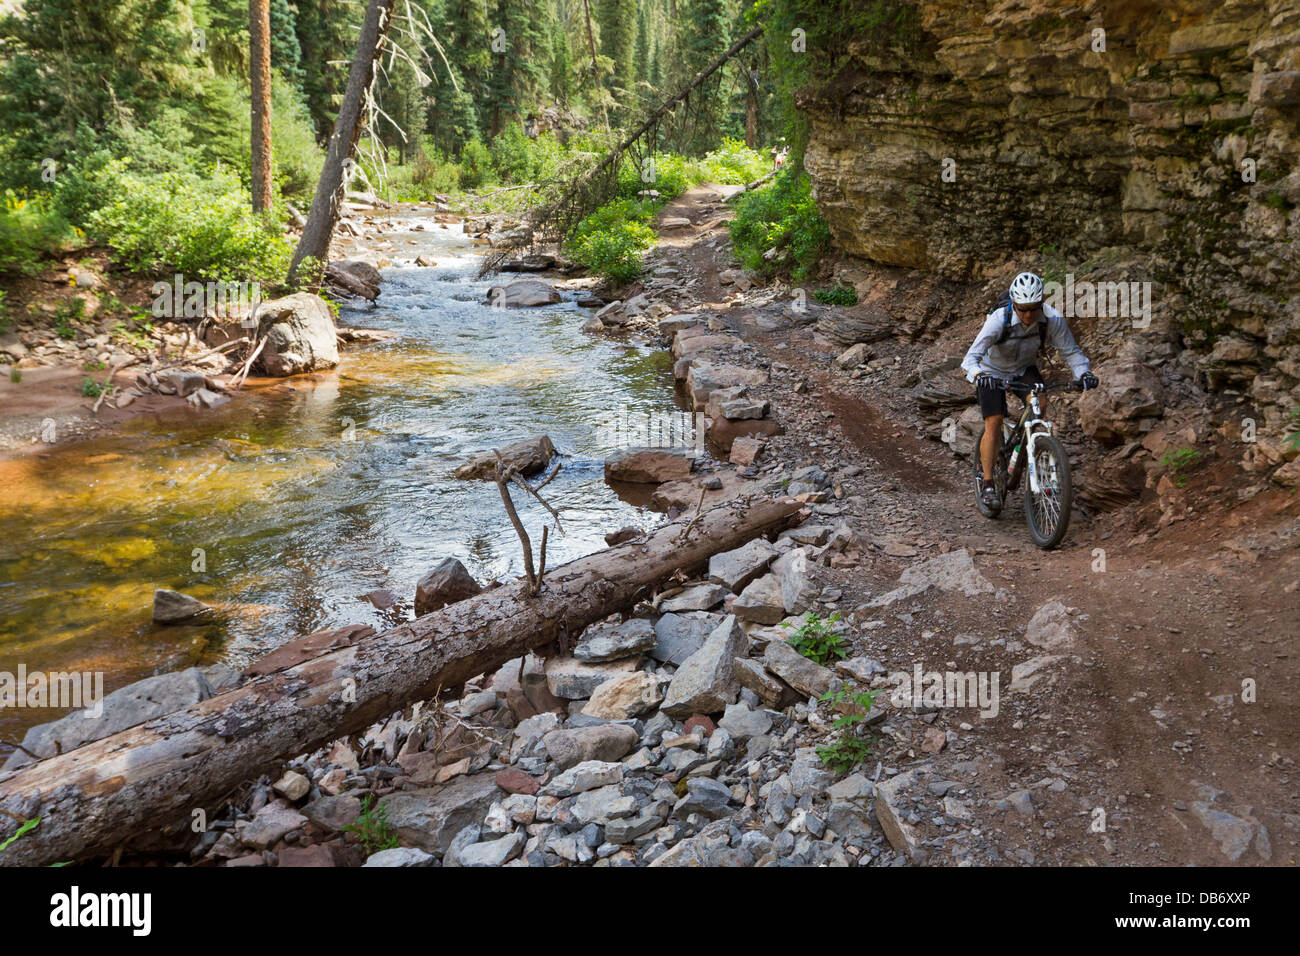 Tim Bateman Mountainbike-Touren auf den Spuren von Hermosa Creek in der Nähe von Durango, Colorado. Stockfoto